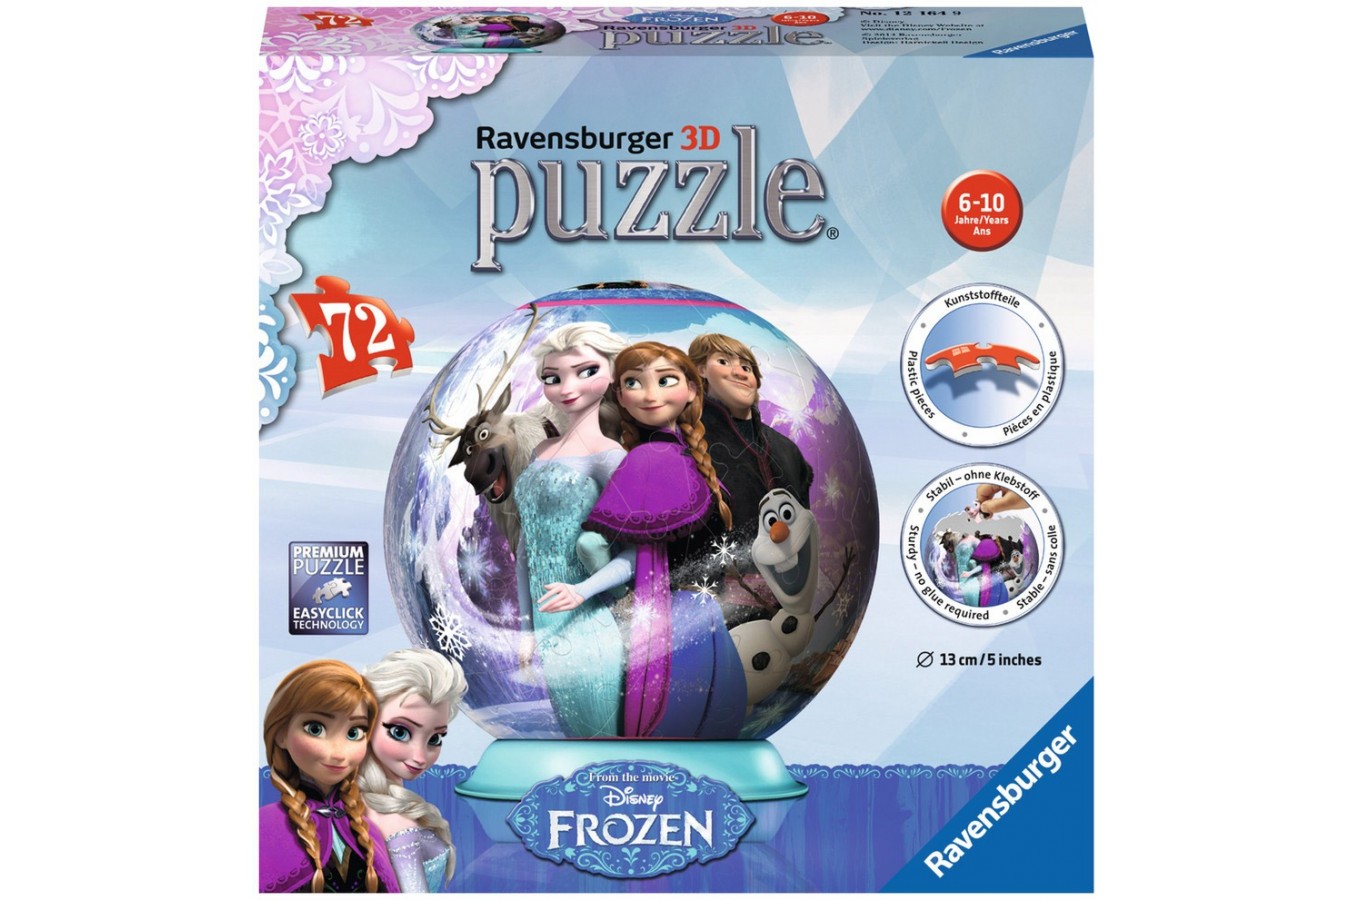 Puzzle glob Ravensburger - Frozen, 72 piese (12164)